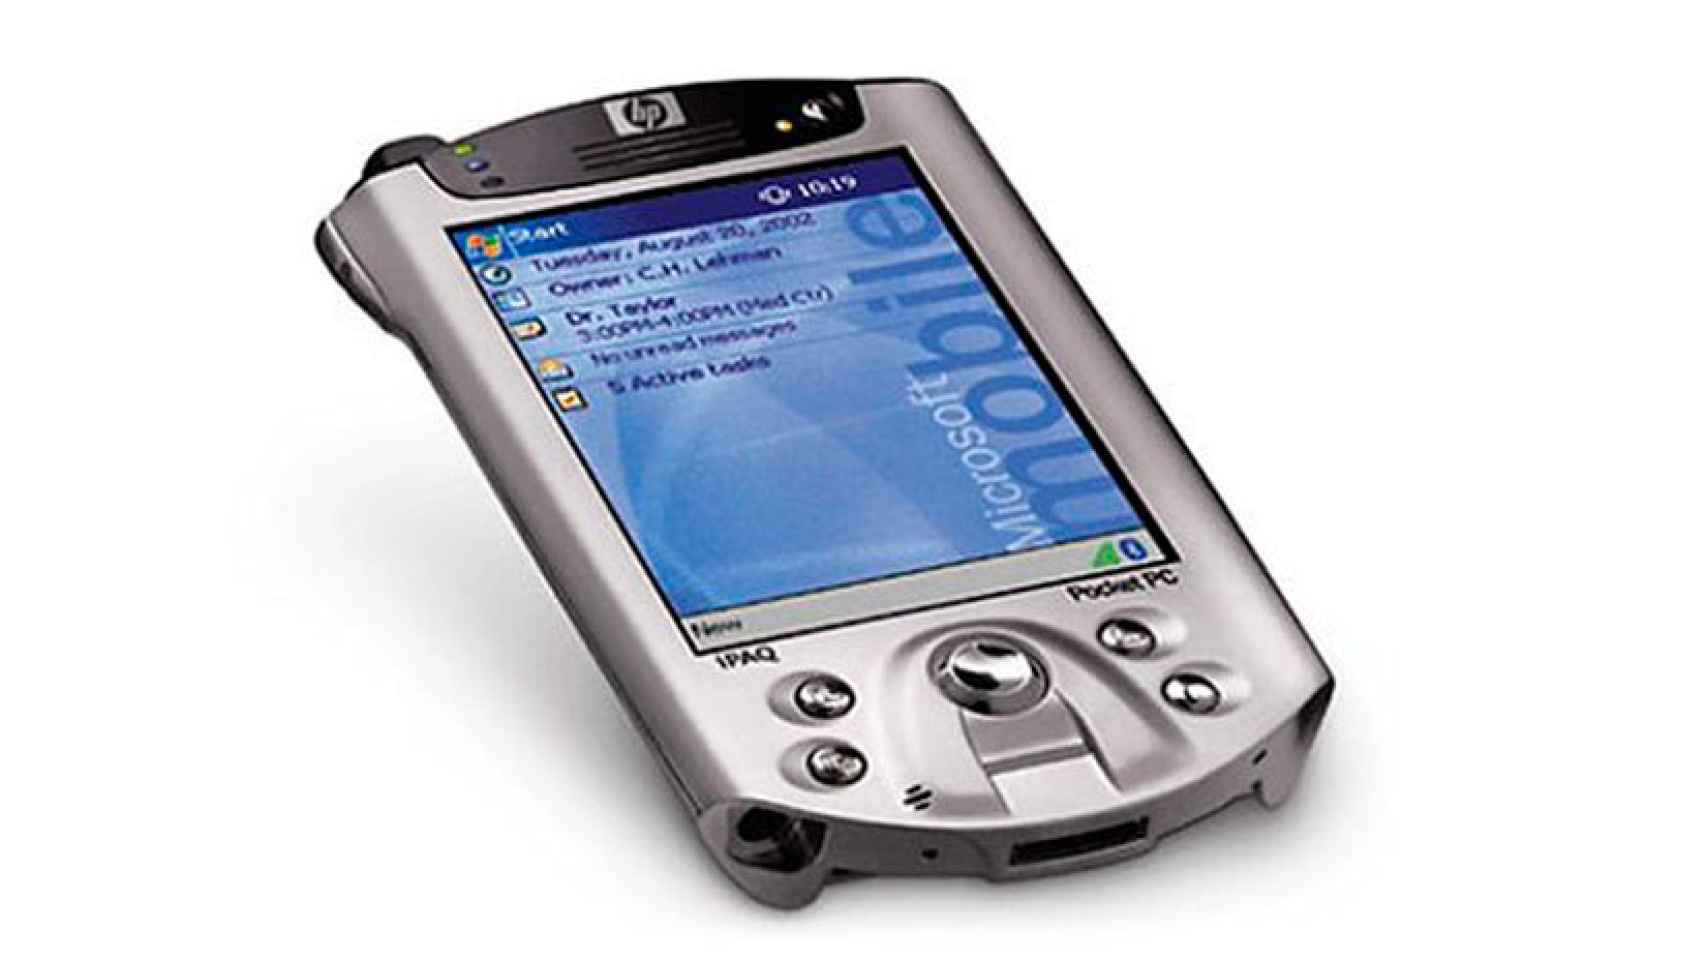 Ni Motorola ni iPhone: el primer móvil con lector de huellas fue un HP de 2002